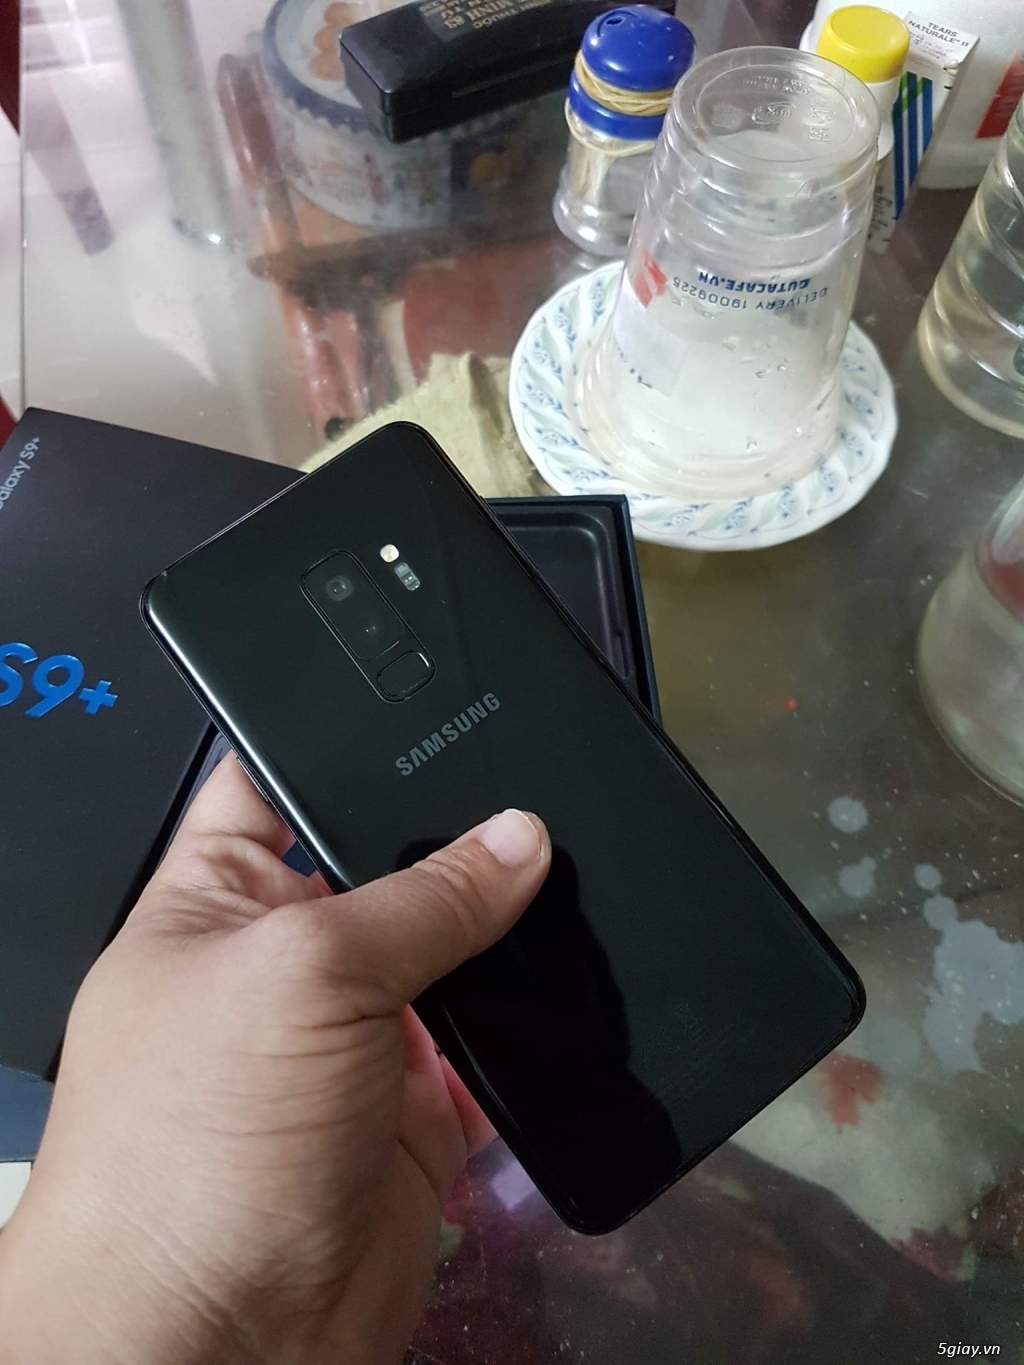 S9 plus đen 128gb 2 sim, Samsung Việt Nam bảo hành 5/2019 - 5